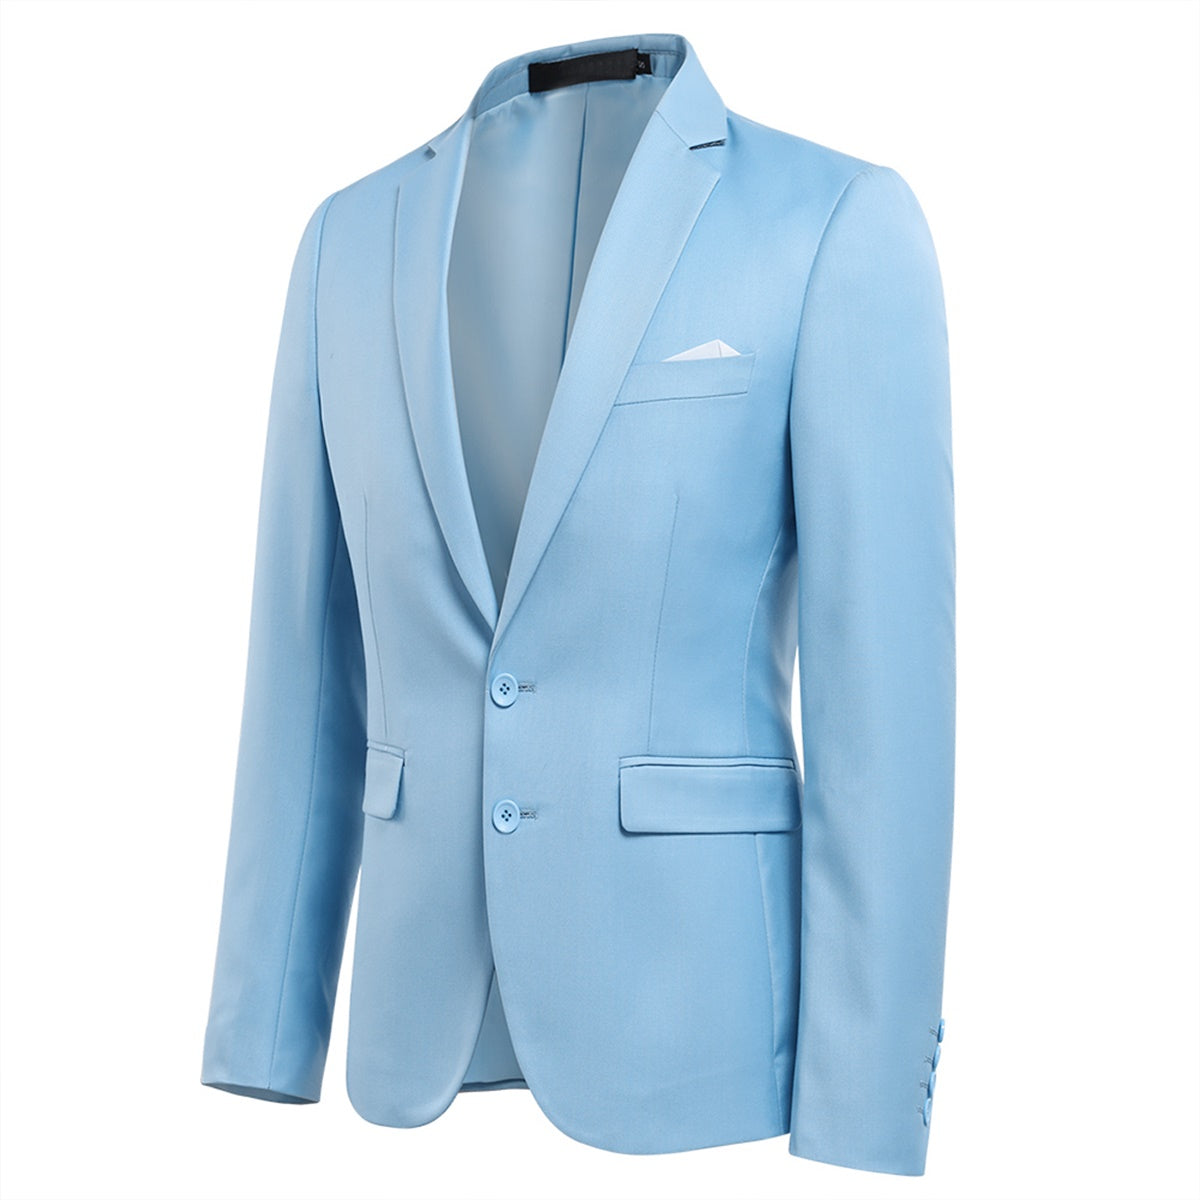 Light Blue 2-Piece Slim Fit Suit